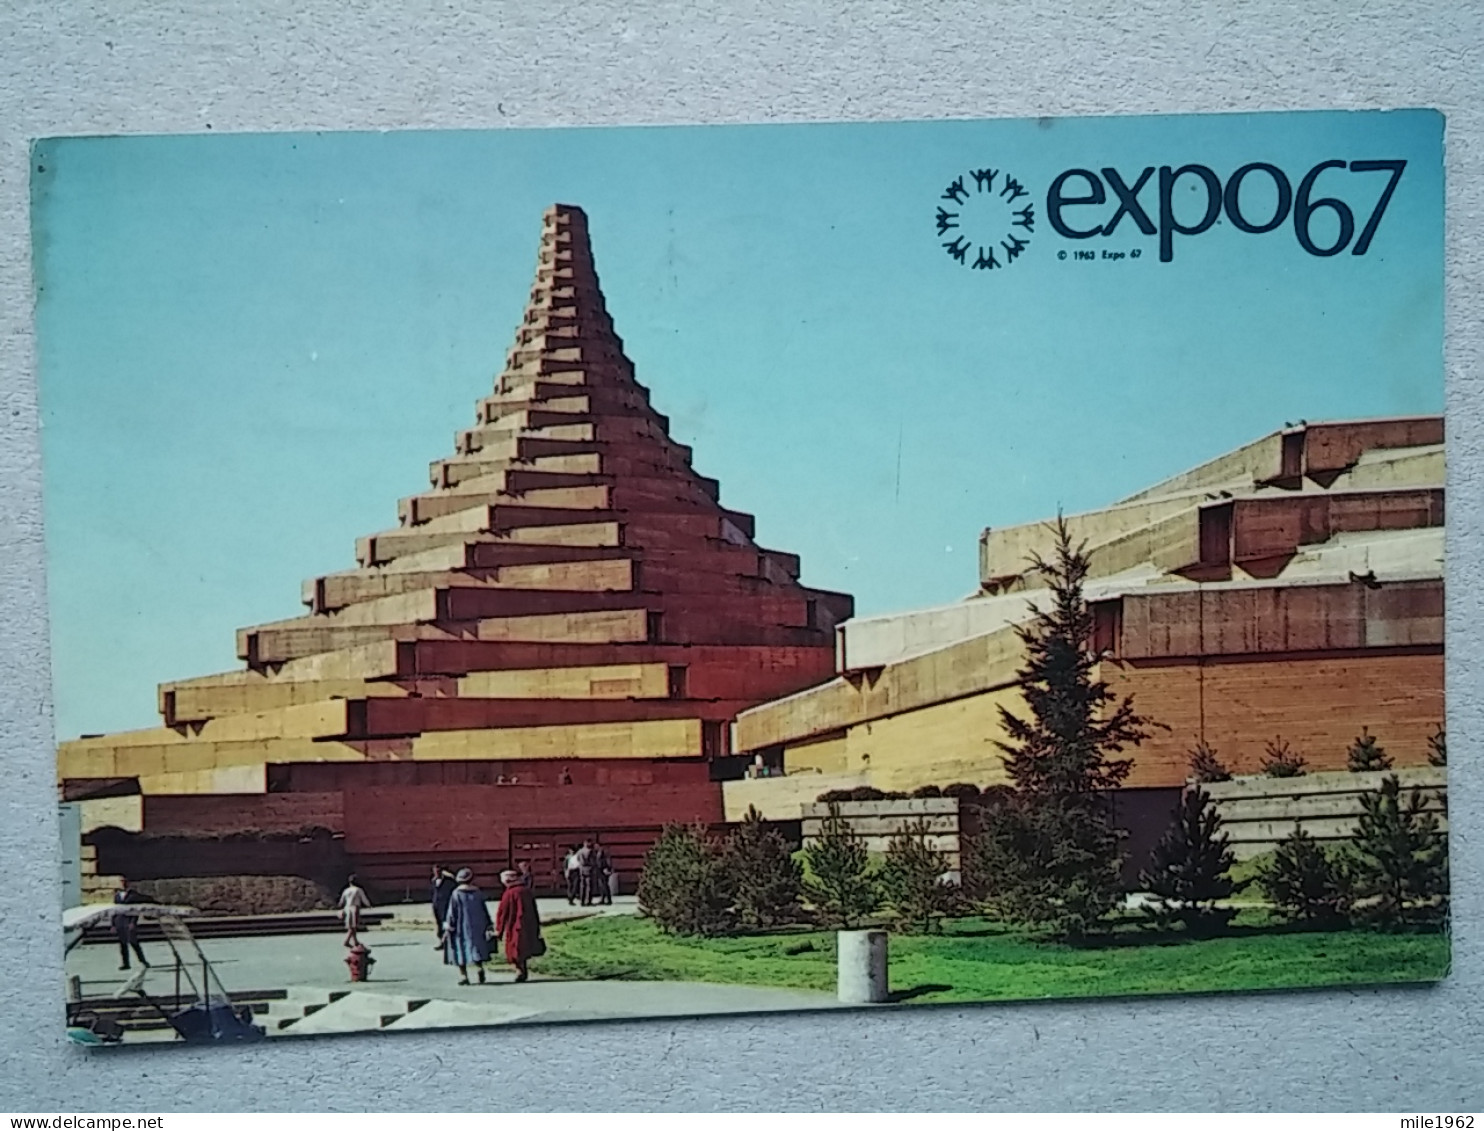 Kov 573-3 - MONTREAL, QUEBEC, CANADA, EXPO 67 - Montreal